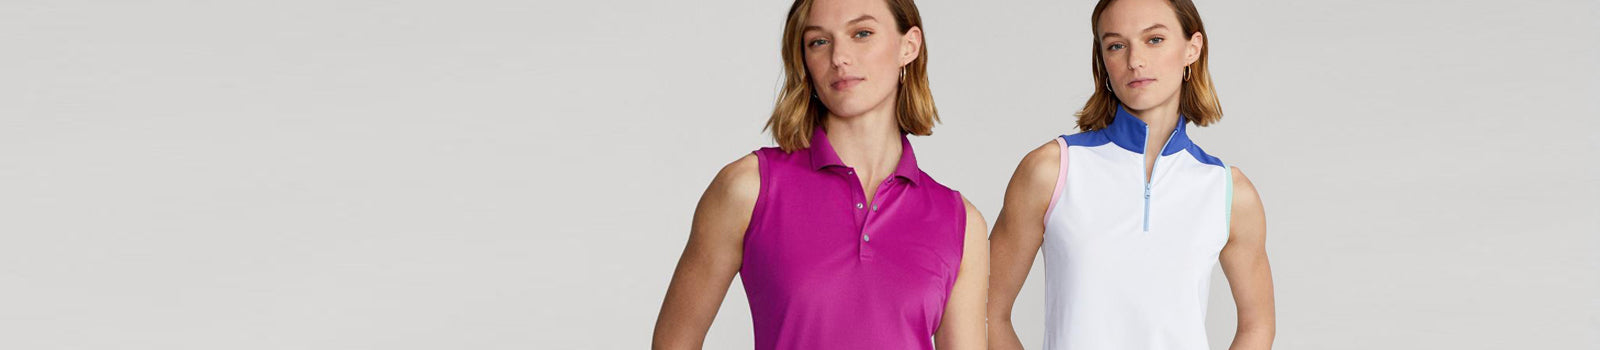 Ralph Lauren women's golf wear at Golf Garb